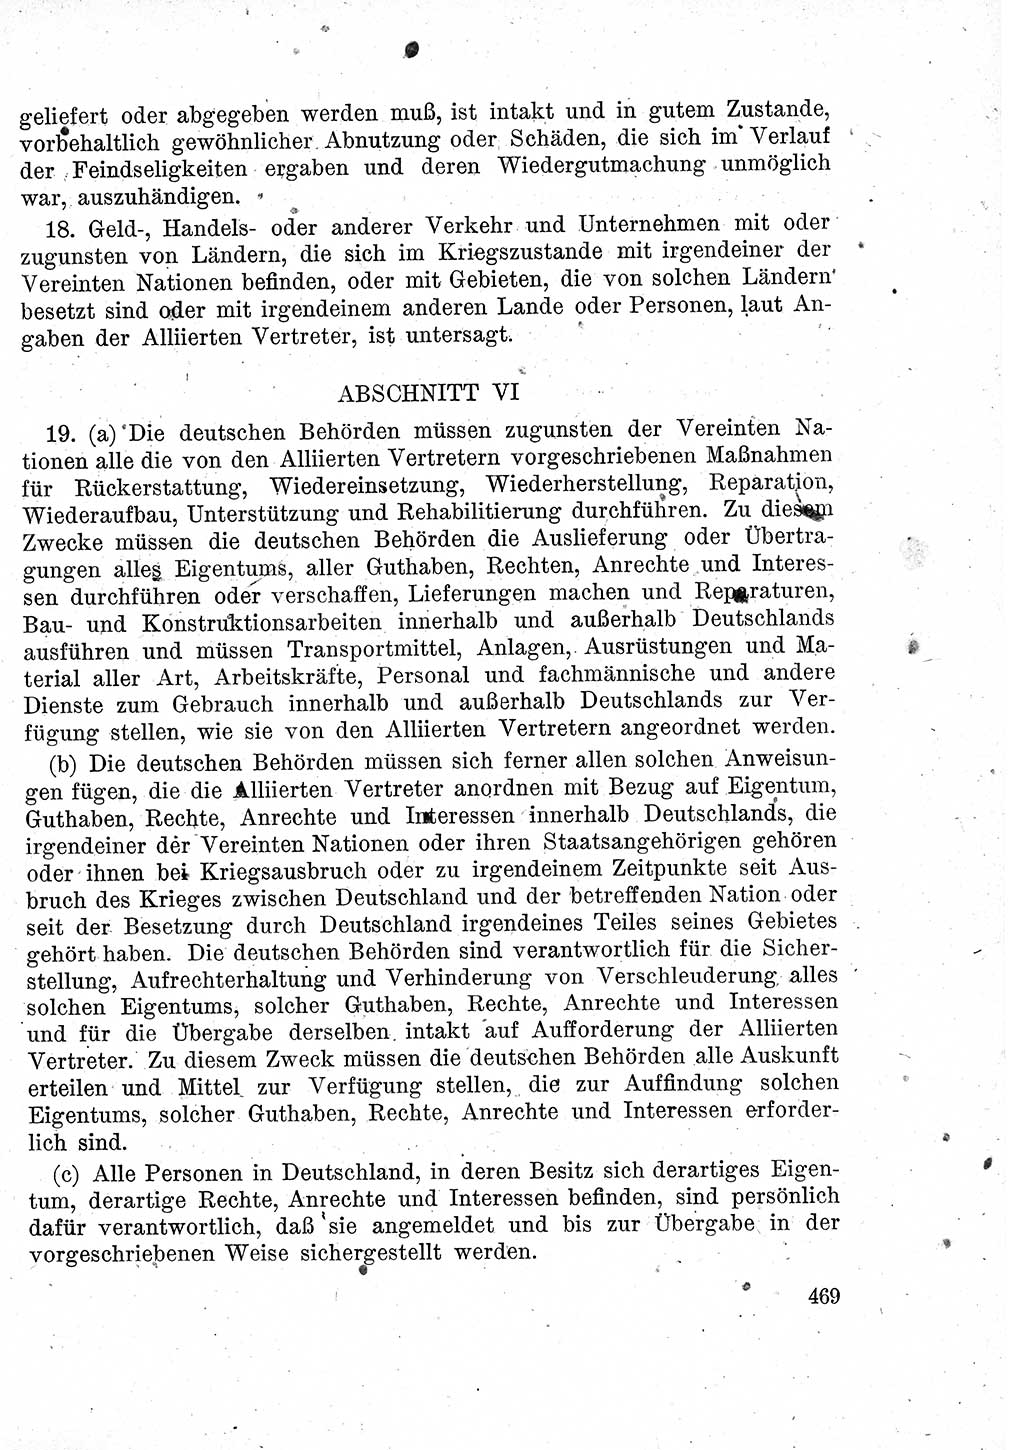 Das Recht der Besatzungsmacht (Deutschland), Proklamationen, Deklerationen, Verordnungen, Gesetze und Bekanntmachungen 1947, Seite 469 (R. Bes. Dtl. 1947, S. 469)